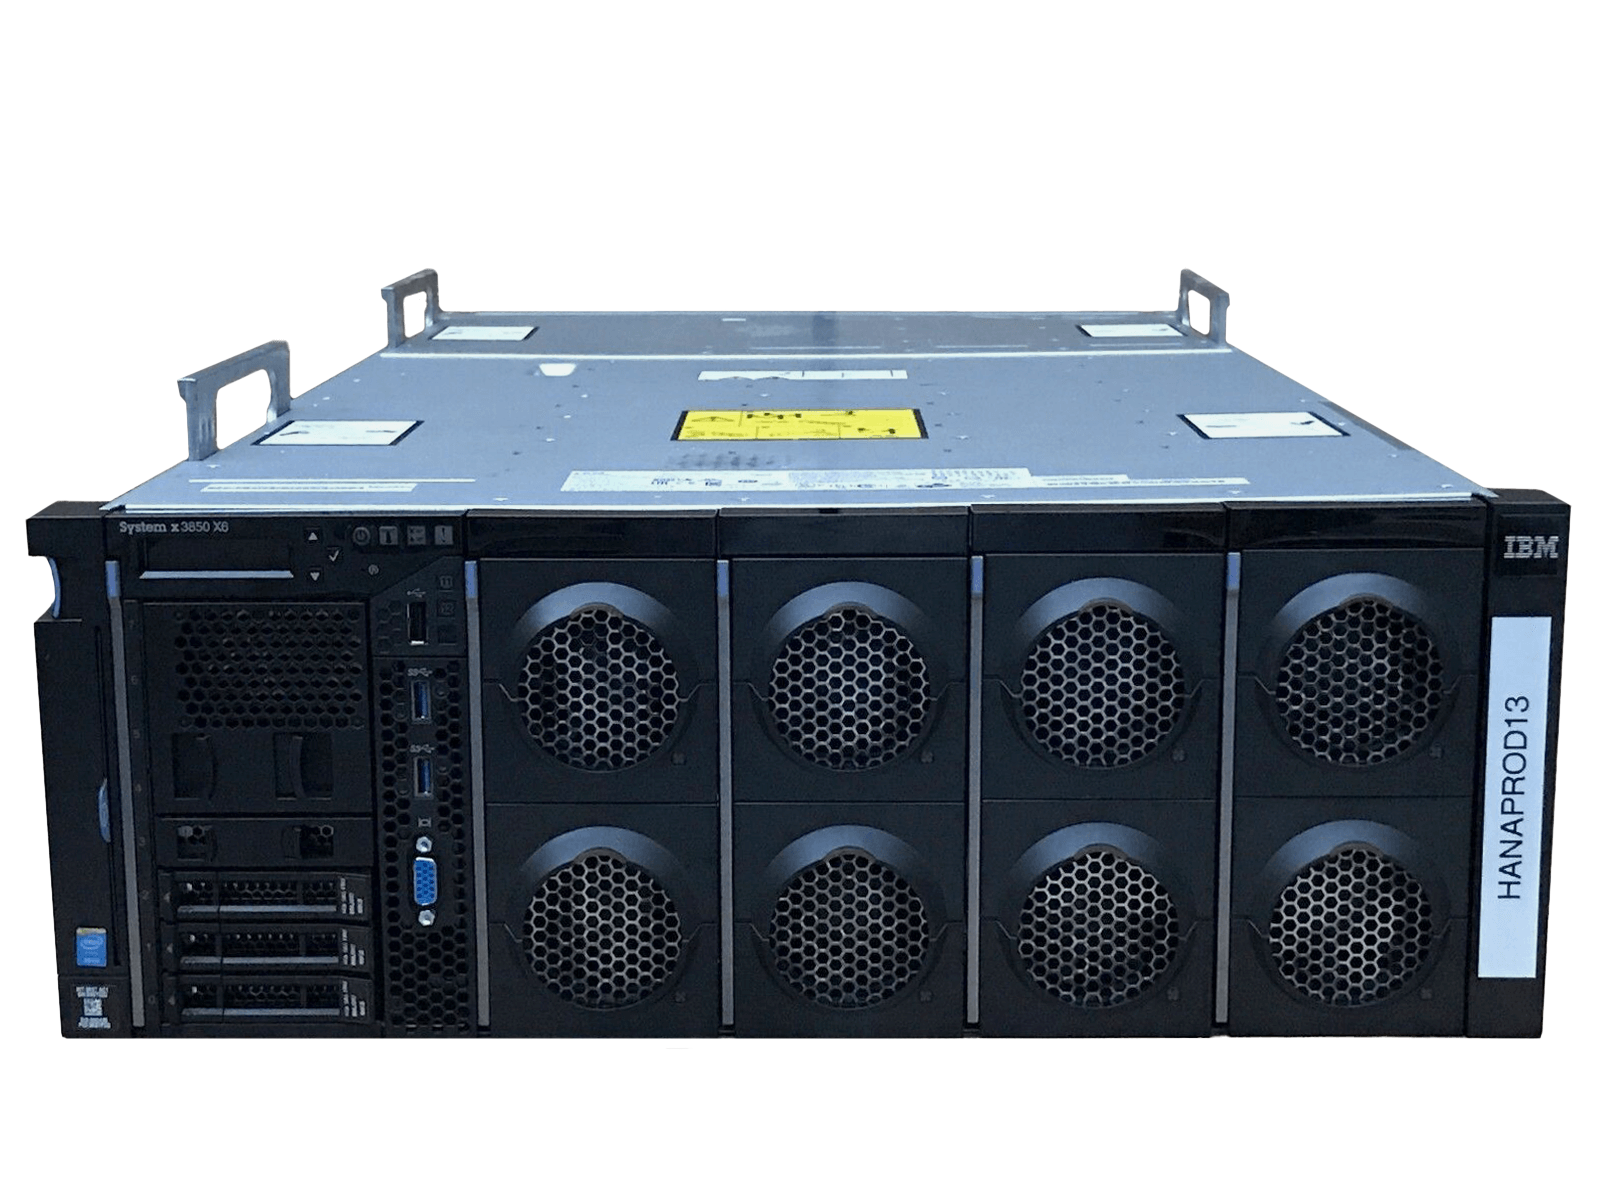 IBM x3850 X6 Server 4x Xeon E7-8870 v4 3072GB DDR4 RAM 3x 300GB 10K 4x 900W PSU